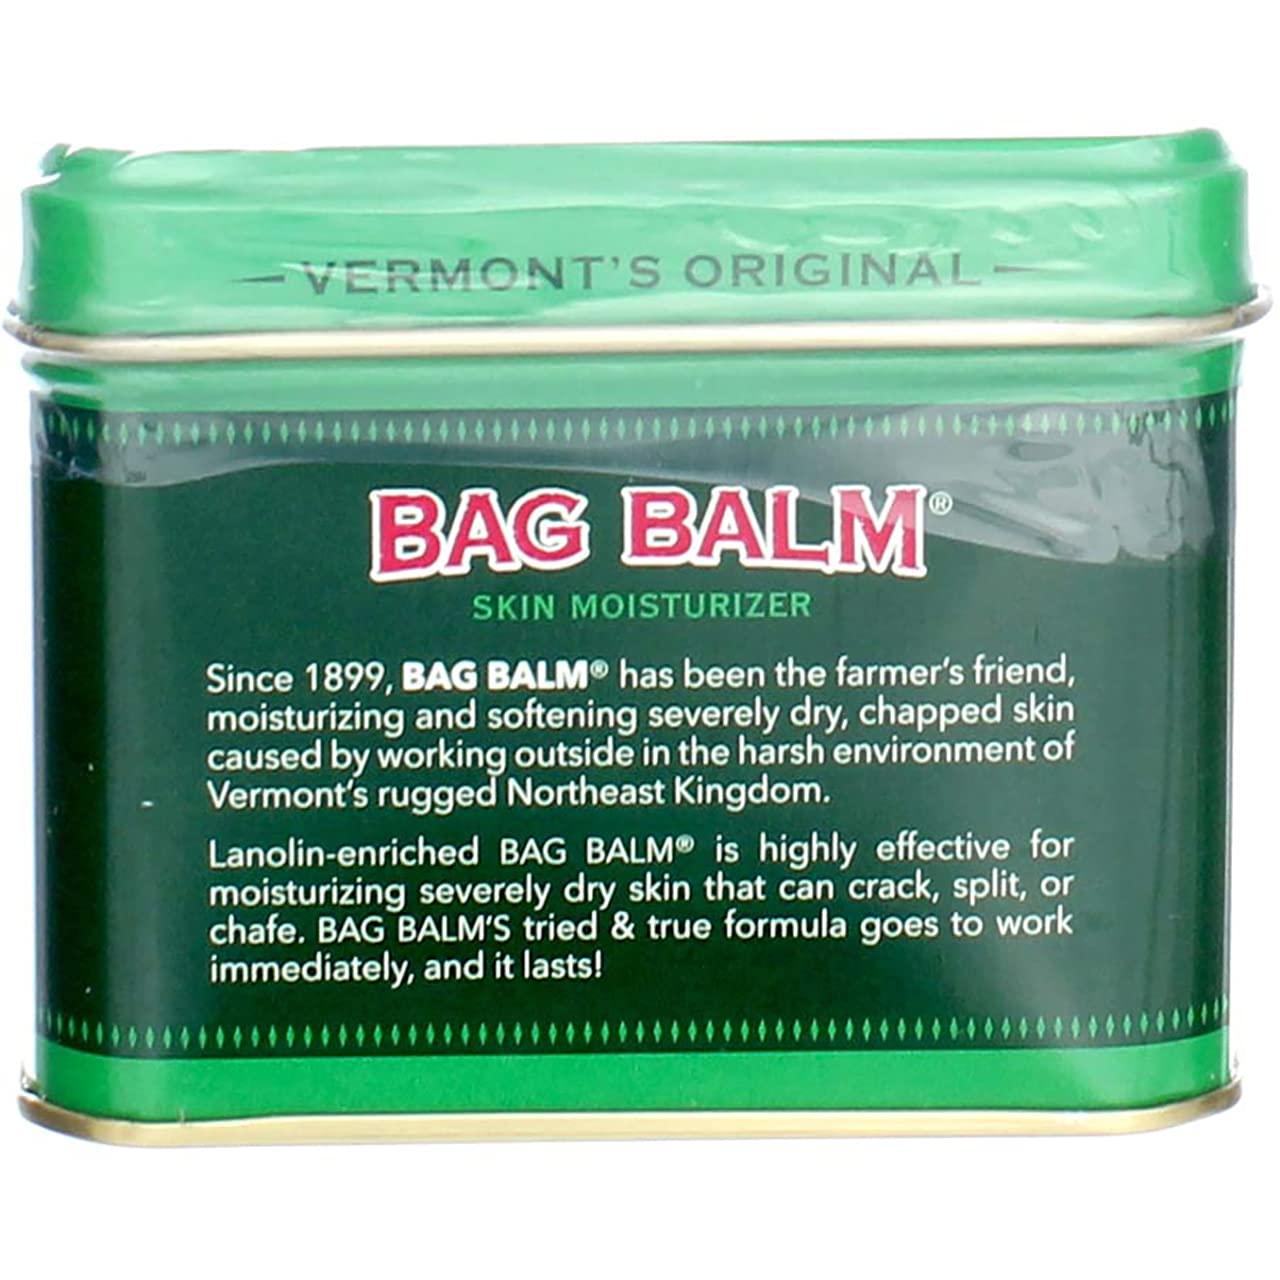 Original Bag Balm - 8 oz.